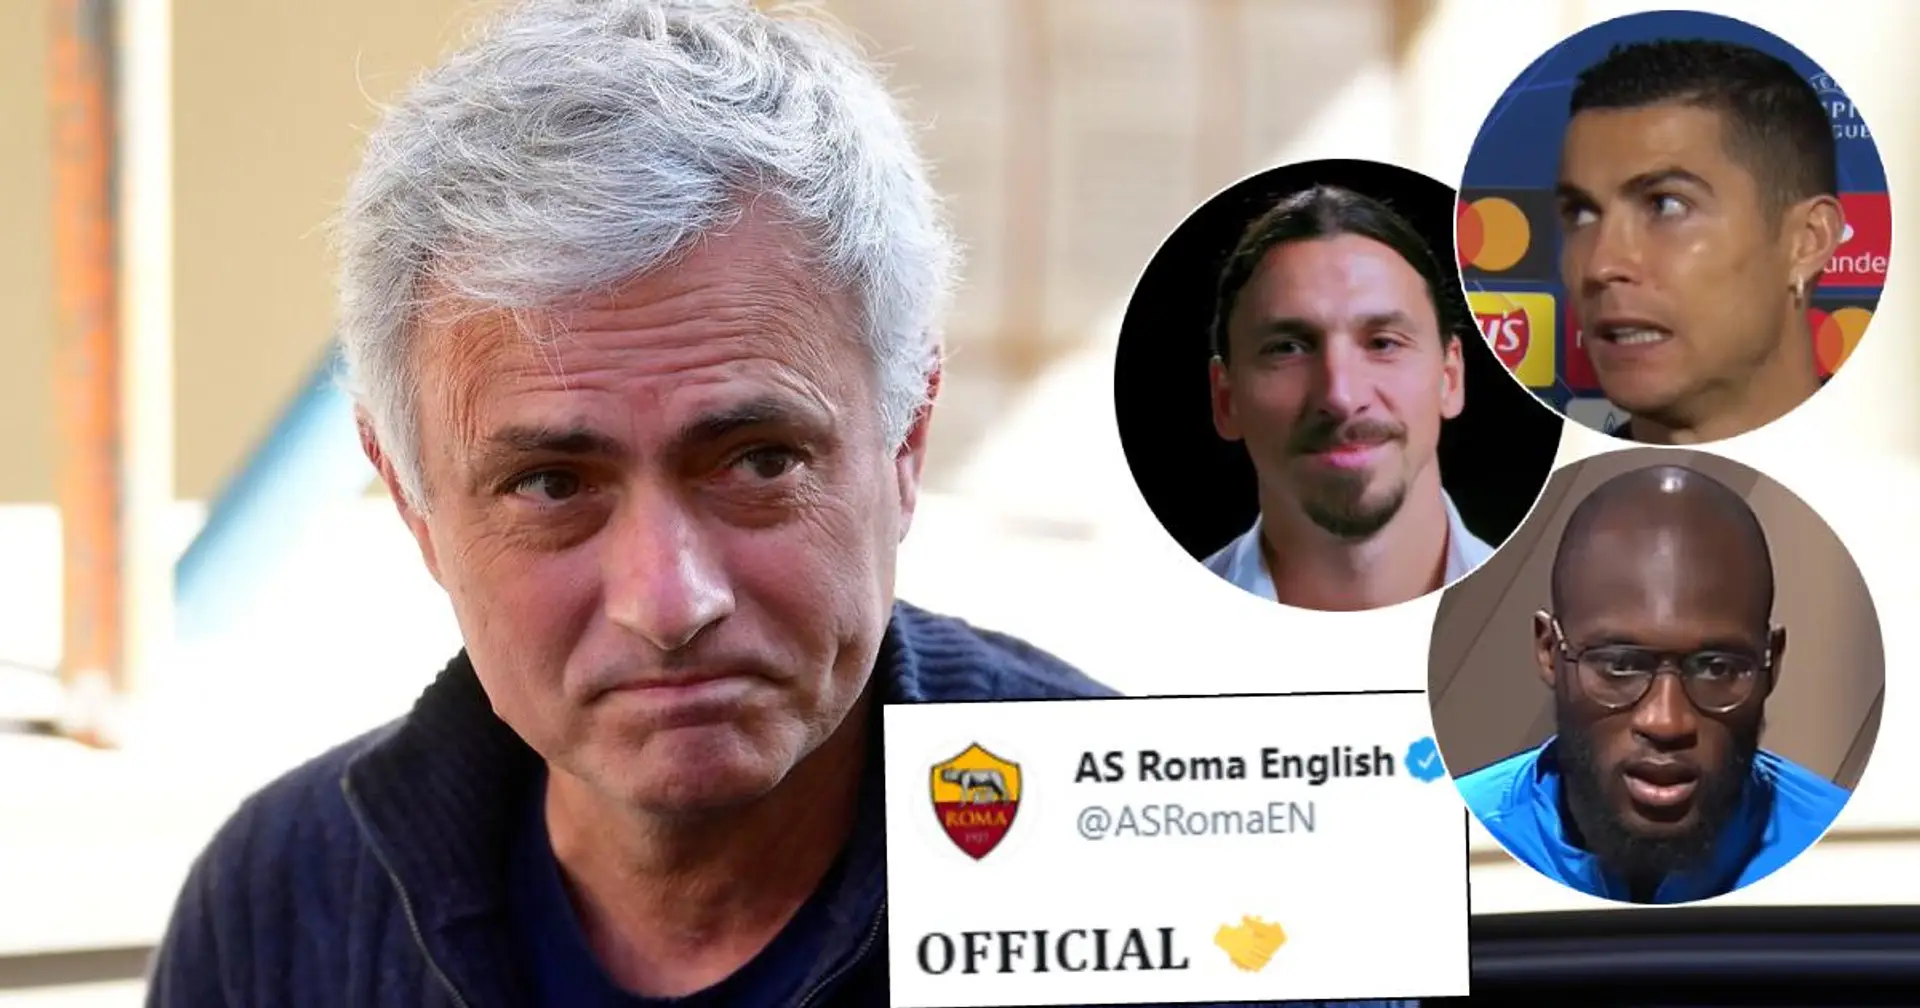 OFICIAL: José Mourinho es nuevo entrenador de la AS Roma